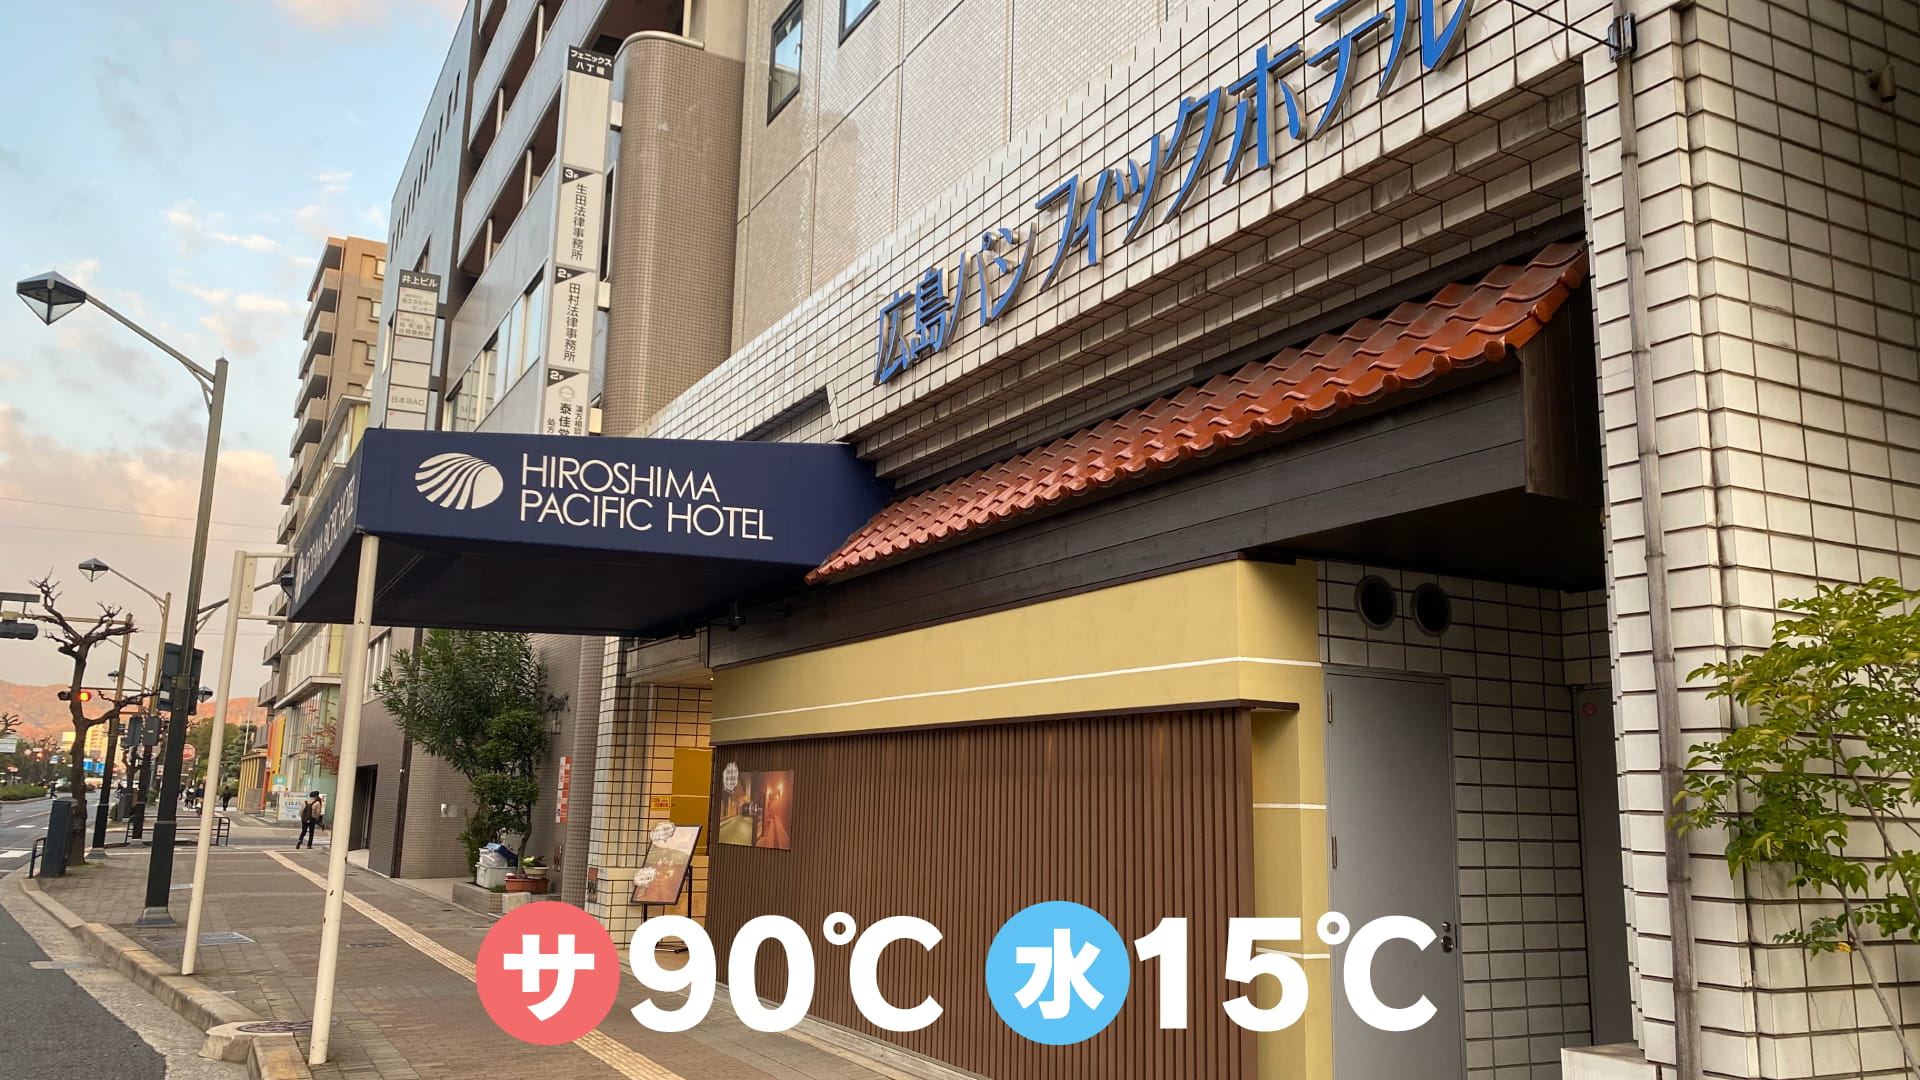 広島パシフィックホテル サウナ 亀の家